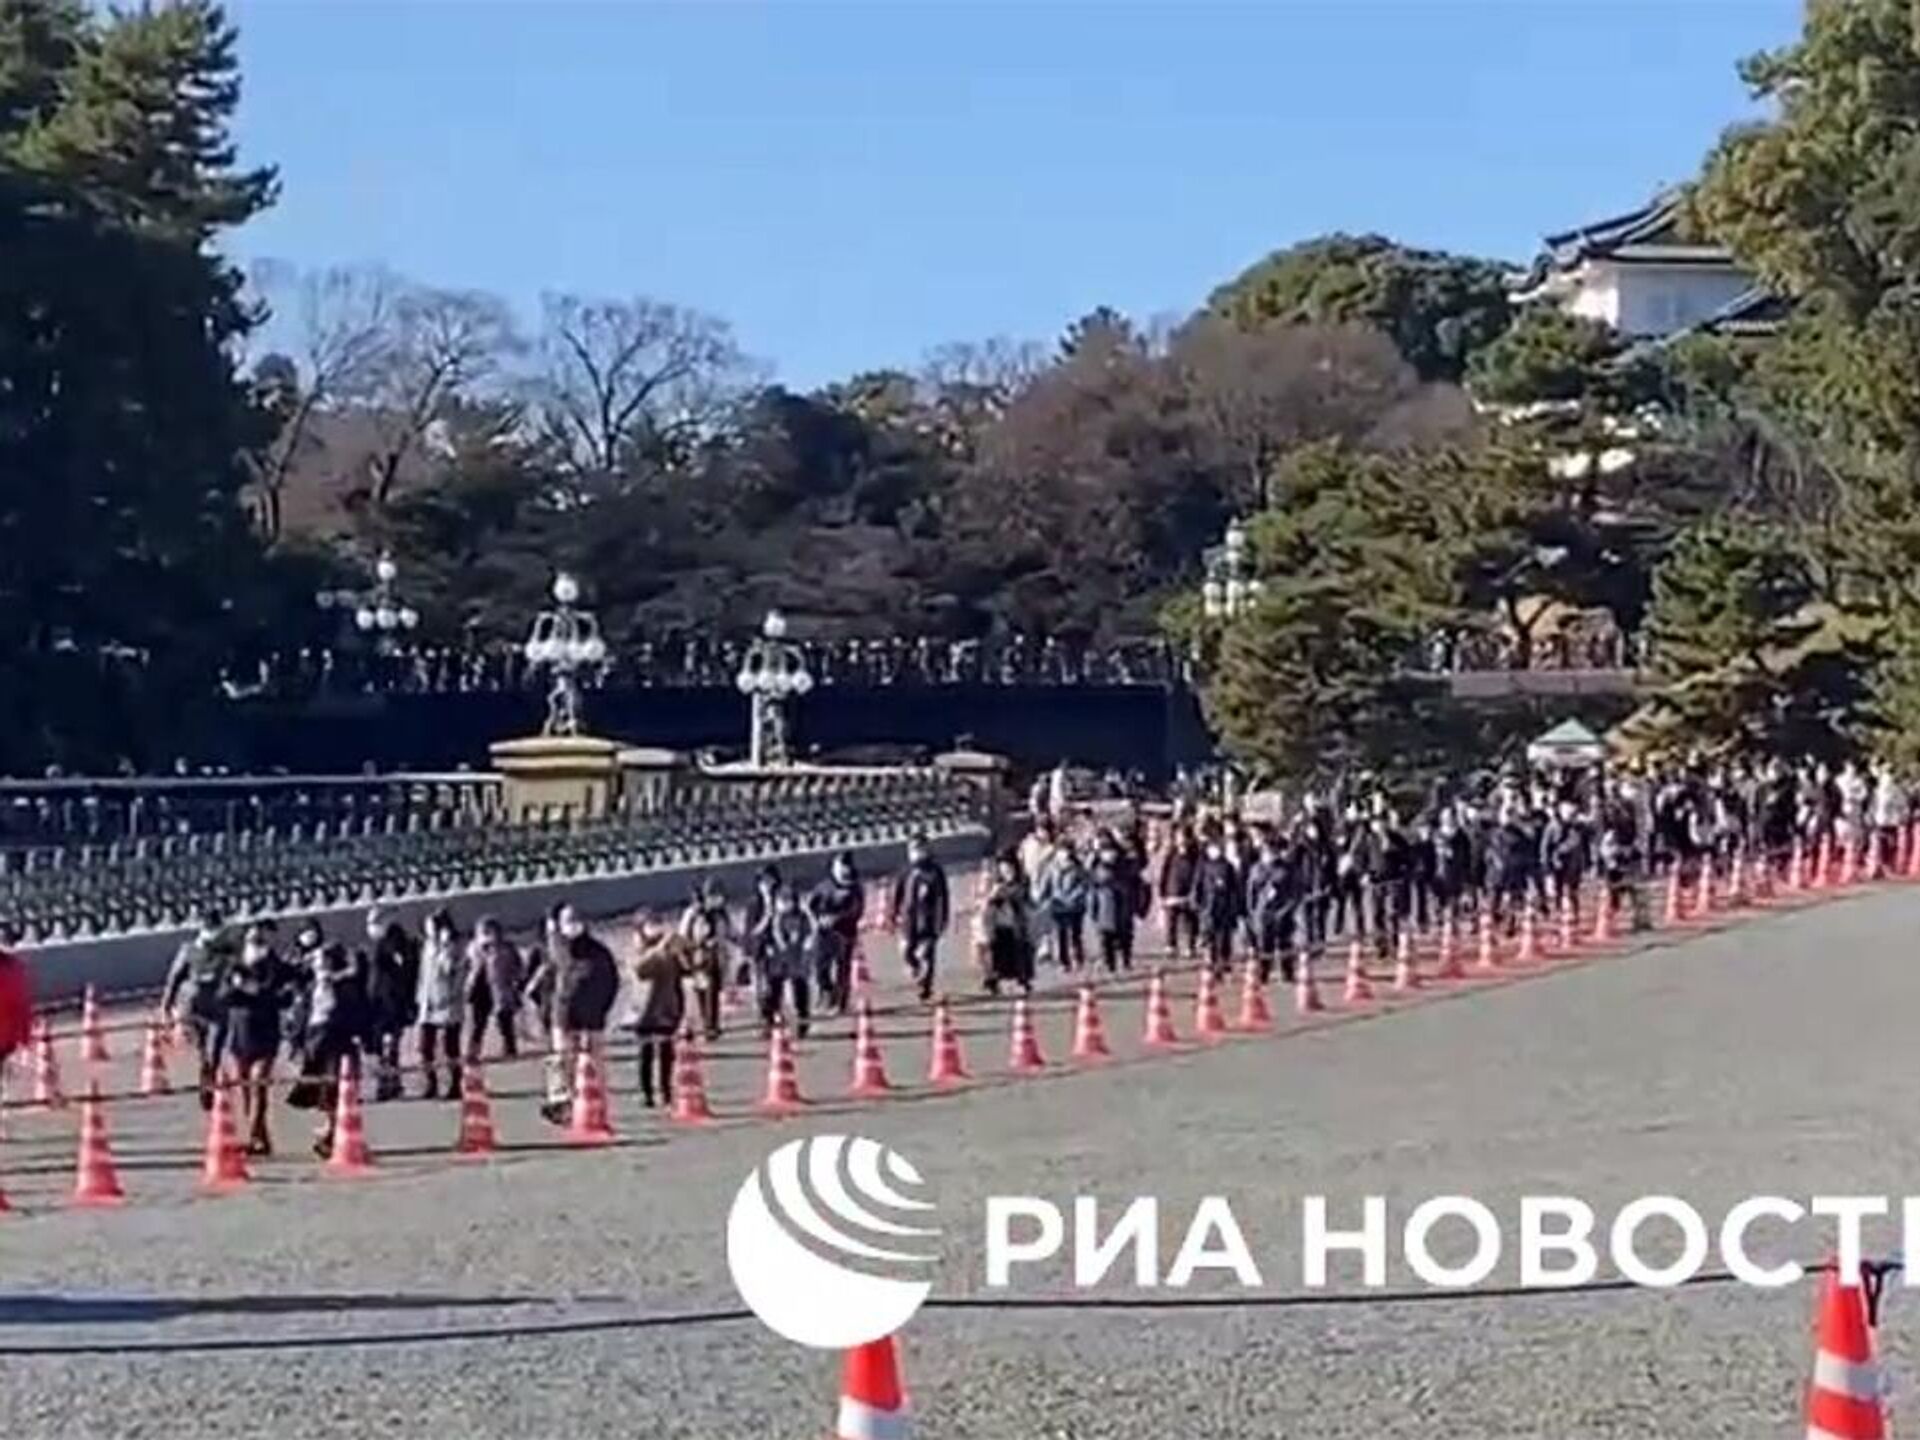 Ճապոնացիները երեք տարի հետո առաջին անգամ եկել են պալատի մոտ՝ շնորհավորելու  կայսրի Նոր տարին